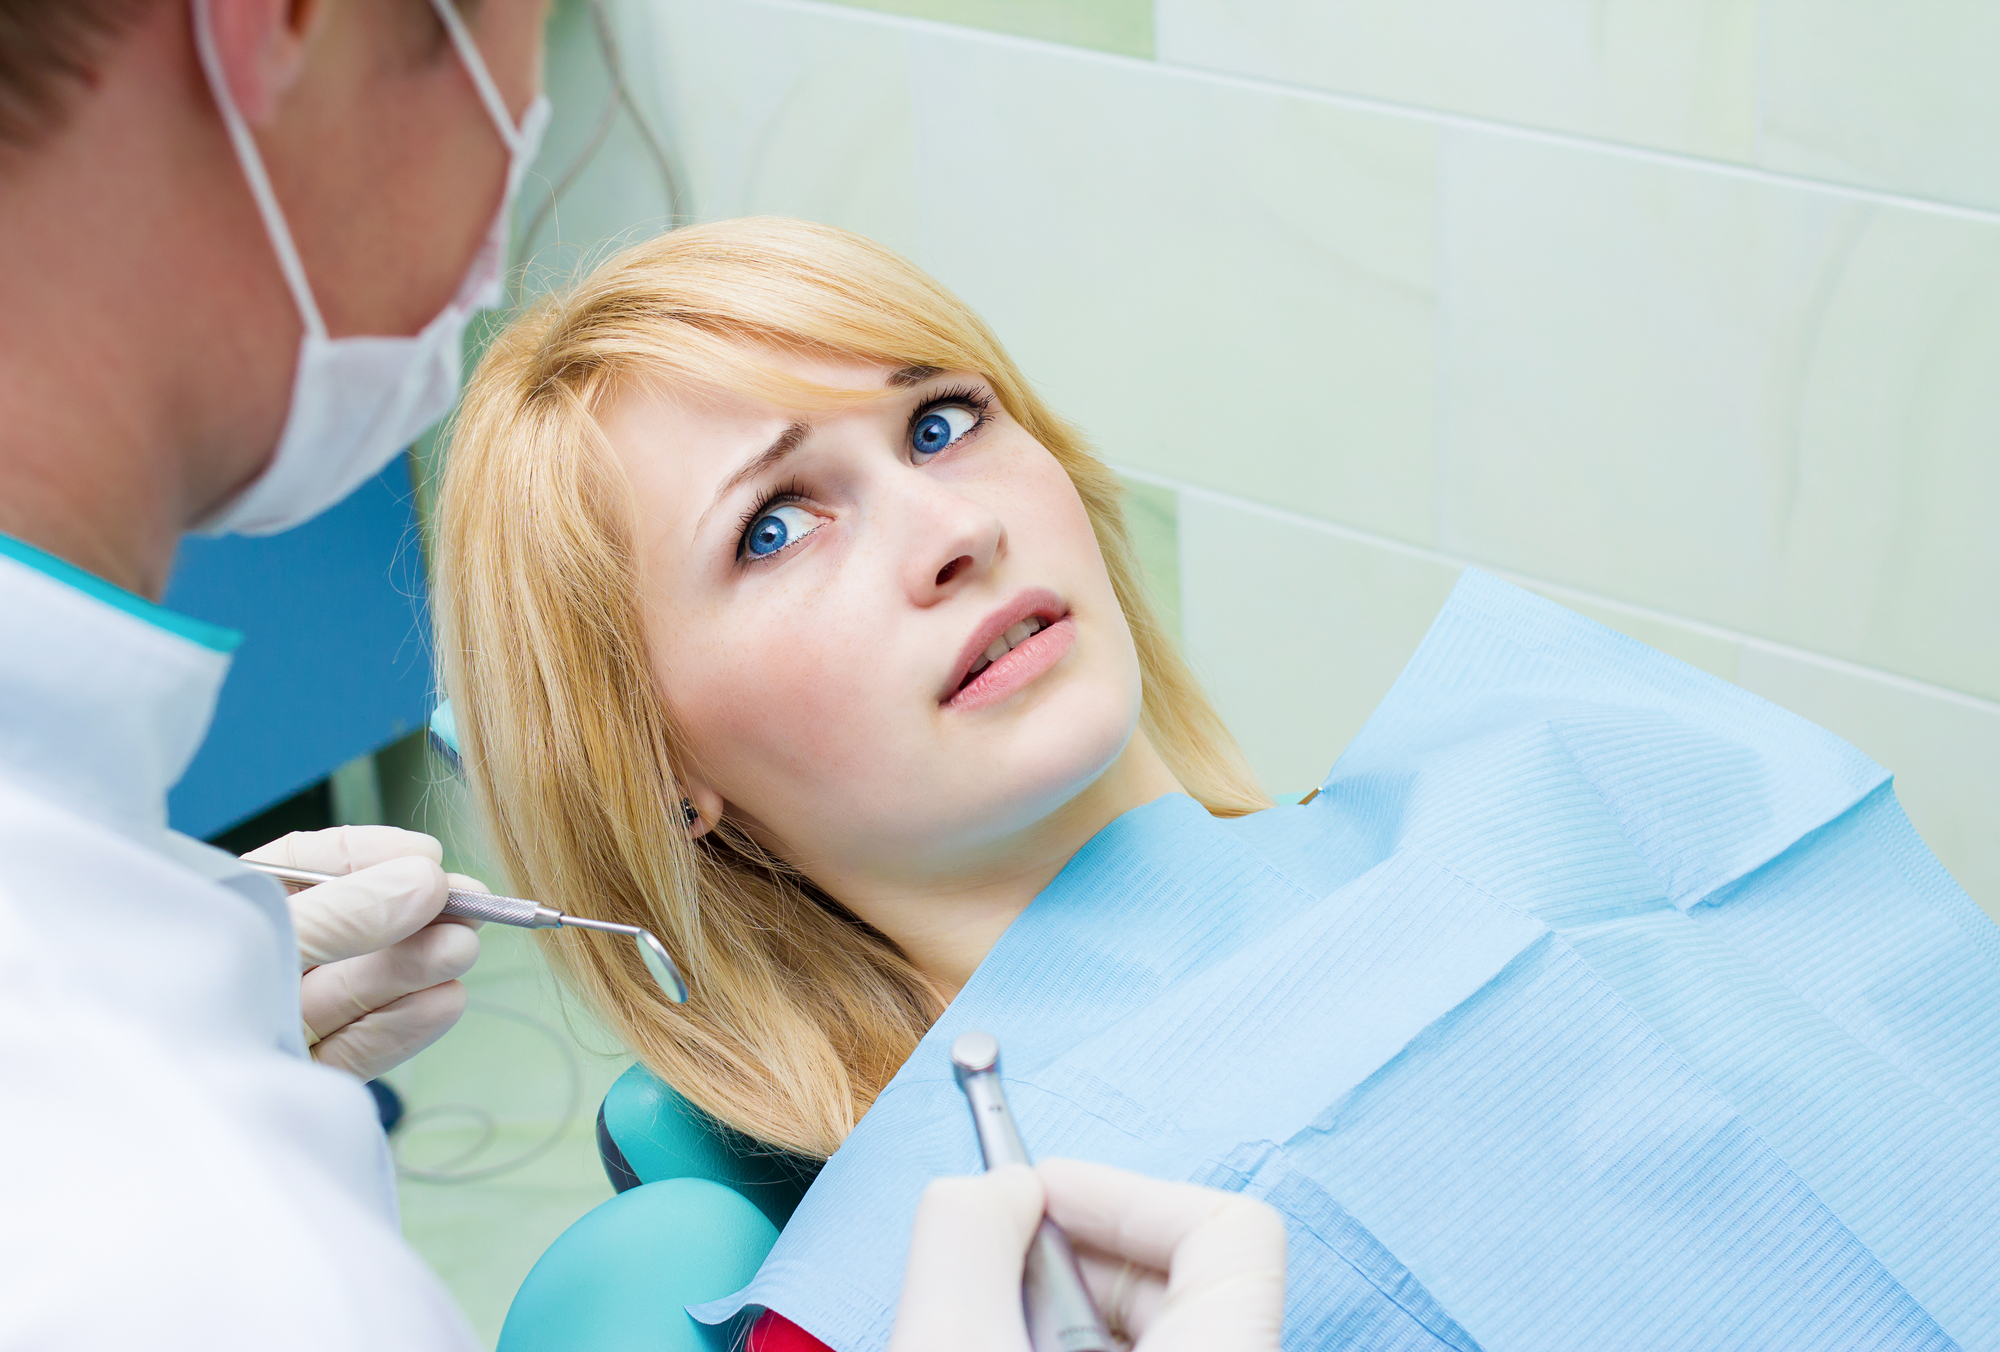 Overcoming Dental Phobia